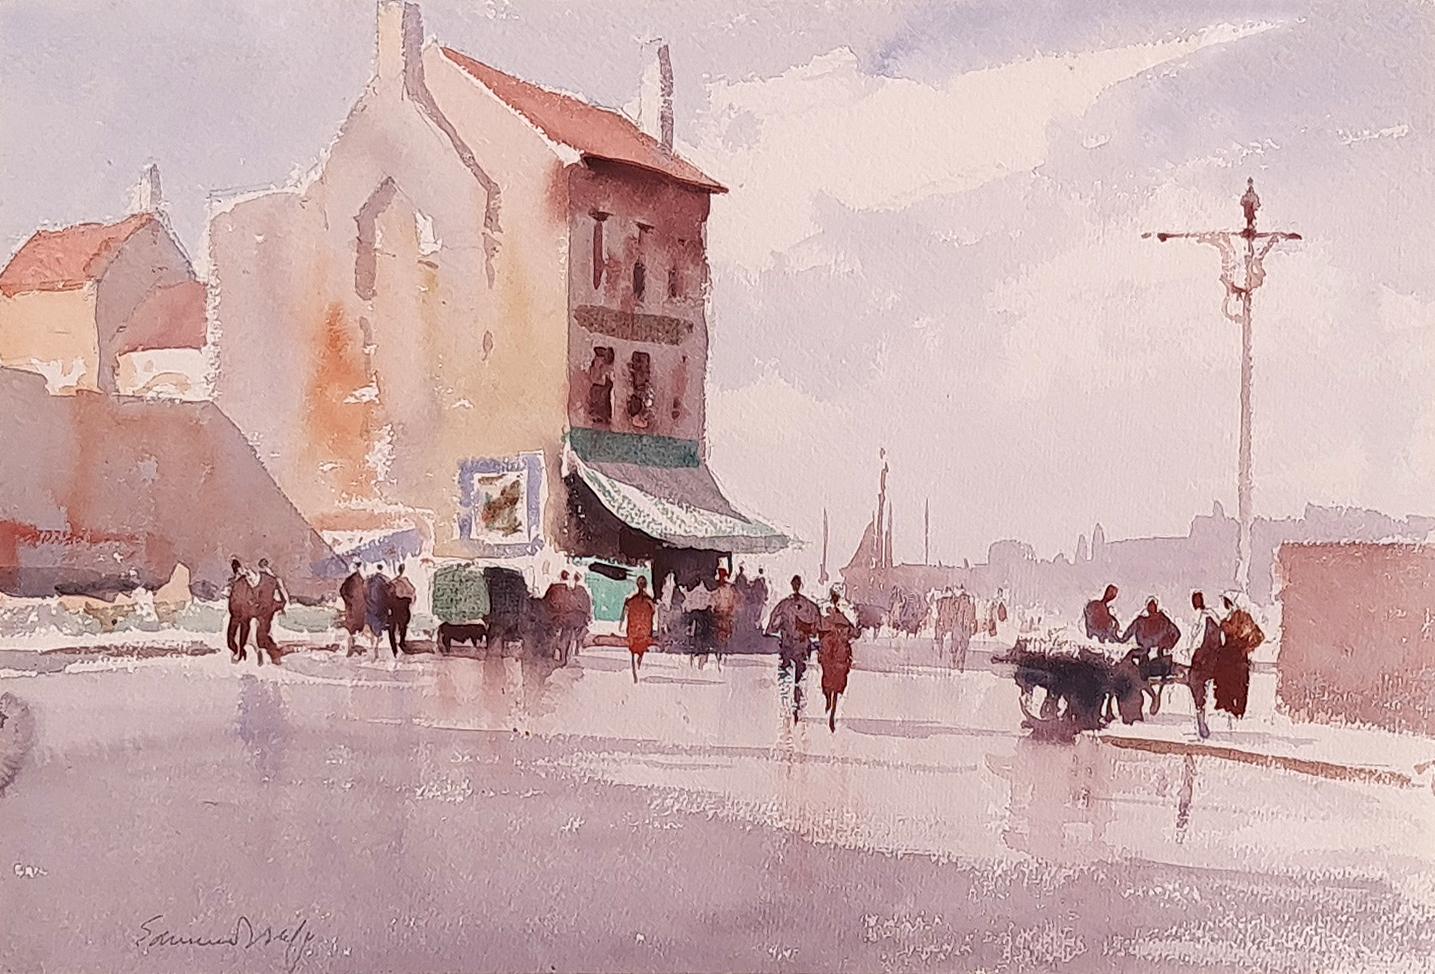 A Rainy Street scene in Dieppe - Art by Edward Seago